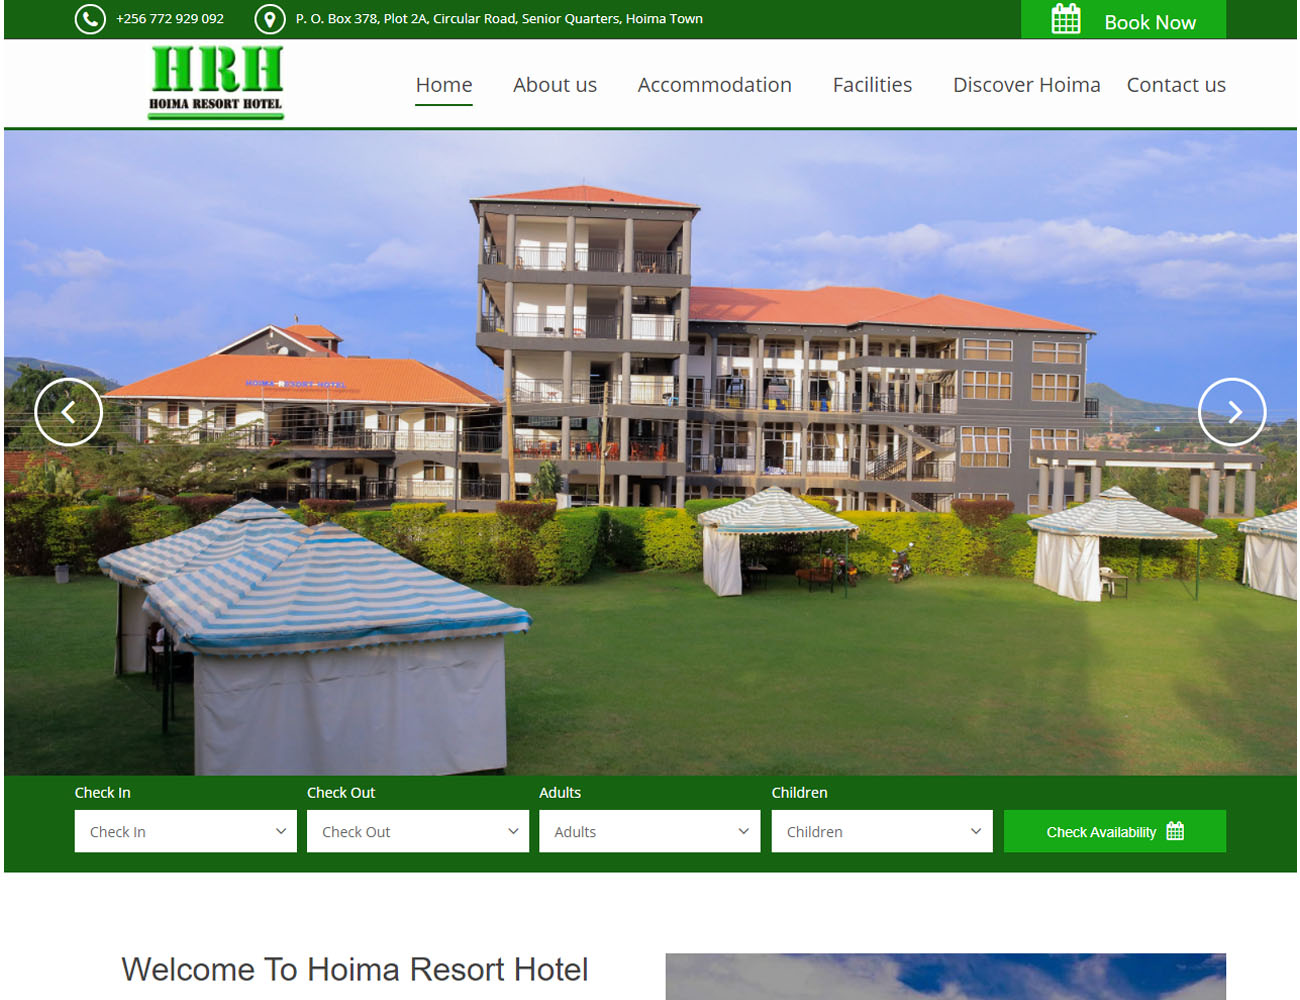 HOIMA RESORT HOTEL WEBSITE DESIGNED BY HOST GIANT UGANDA